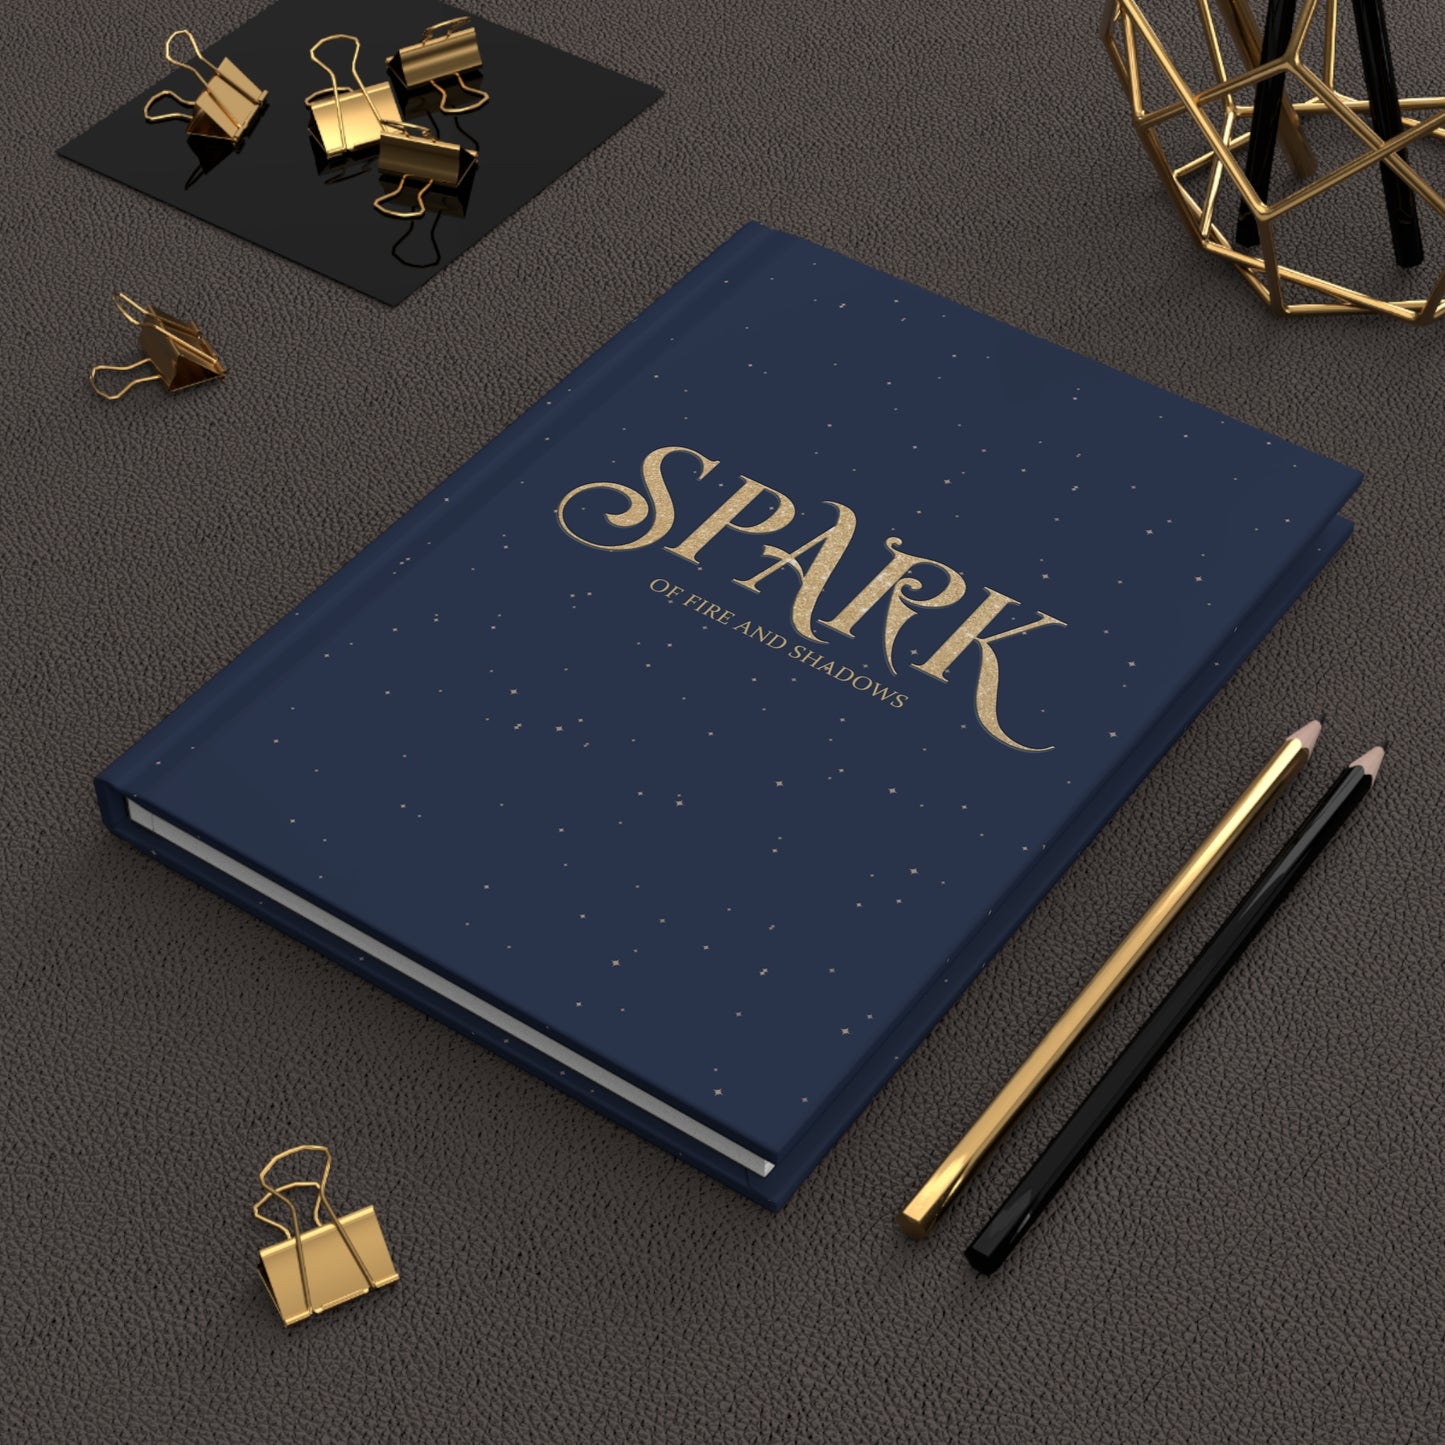 Spark Hardcover Journal